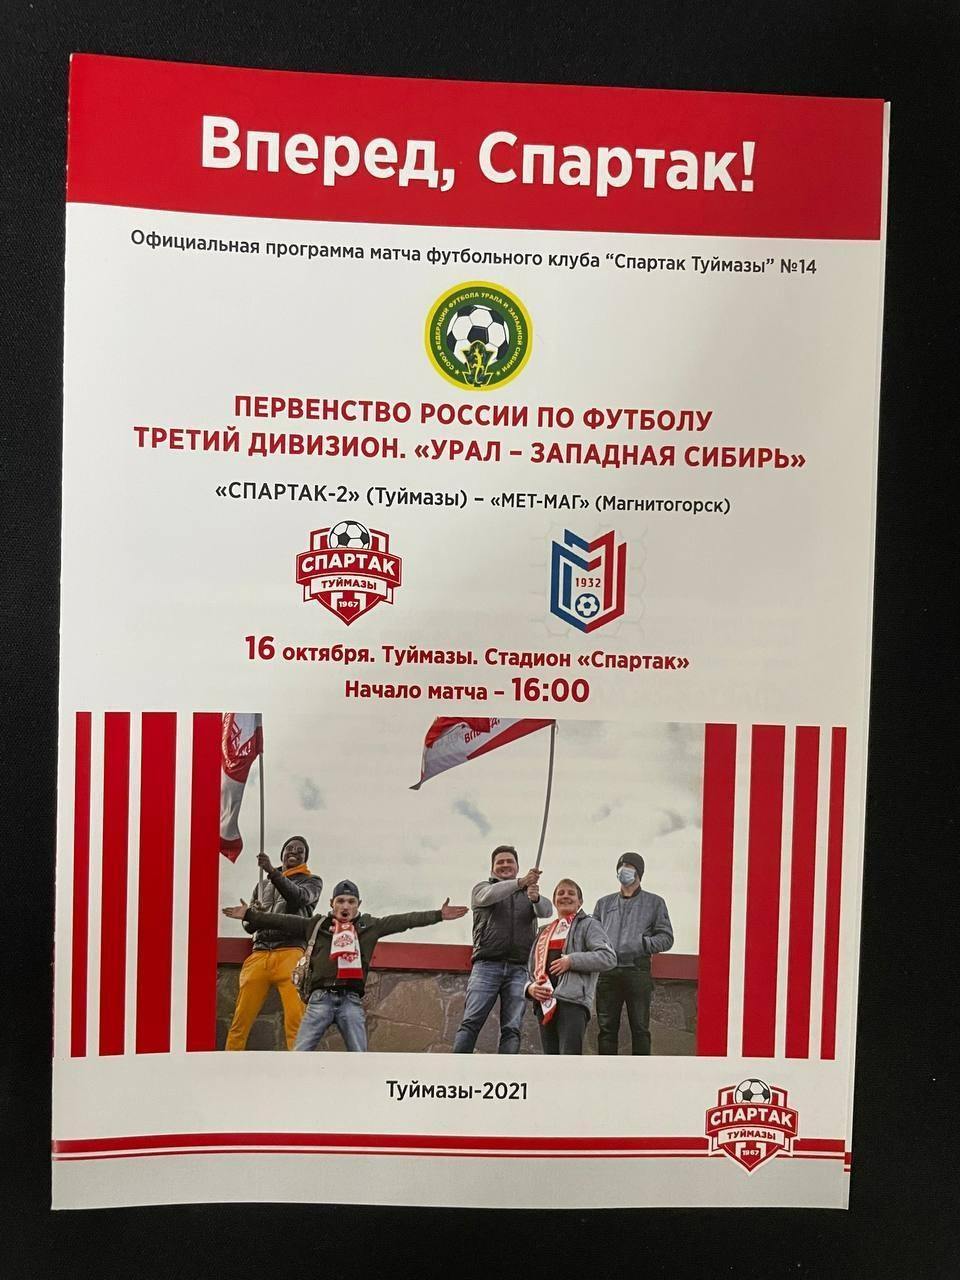 Спартак-2 Туймазы - МЕТ-МАГ Магнитогорск 2021